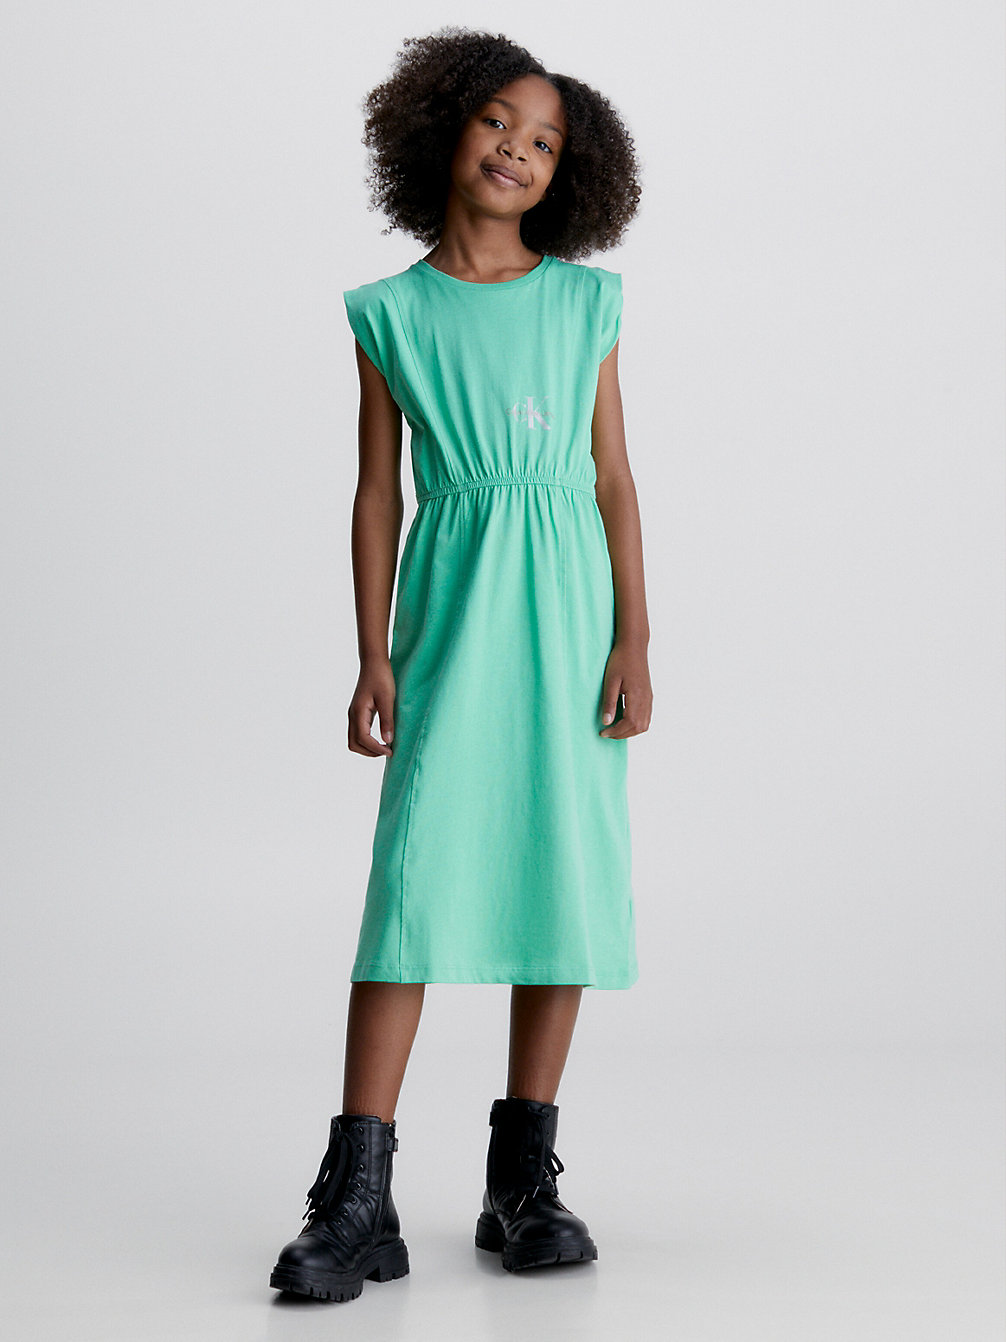 NEPTUNES WAVE Midi T-Shirt Dress undefined girls Calvin Klein